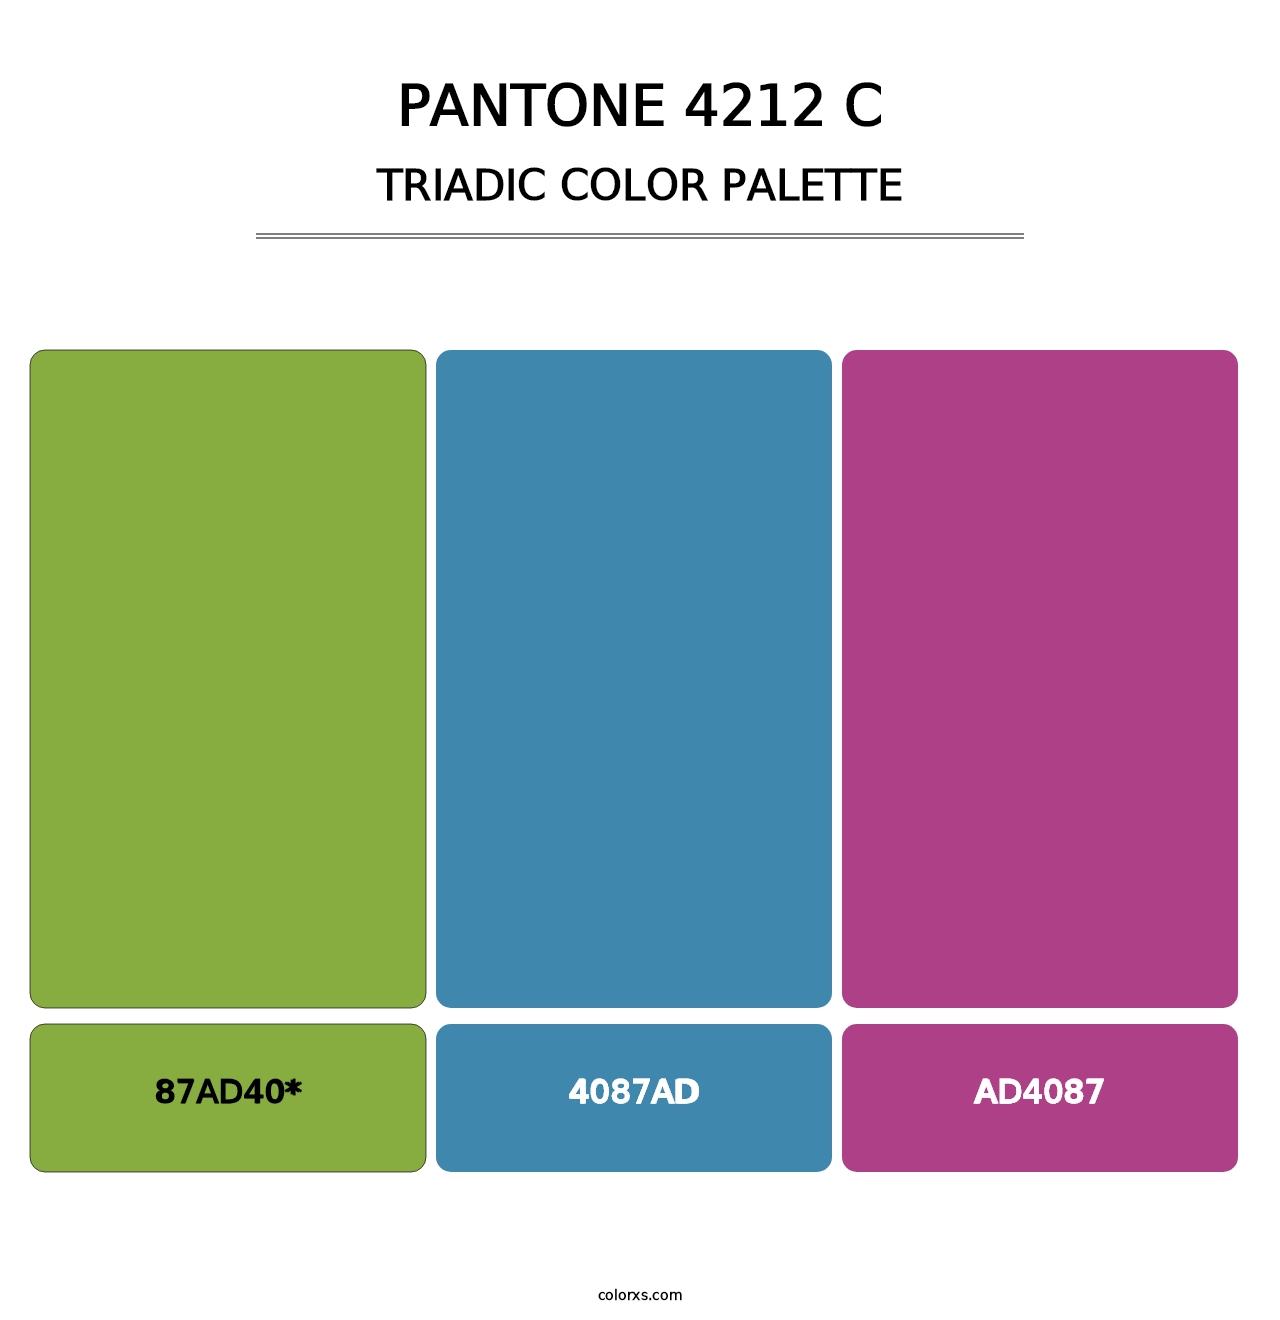 PANTONE 4212 C - Triadic Color Palette